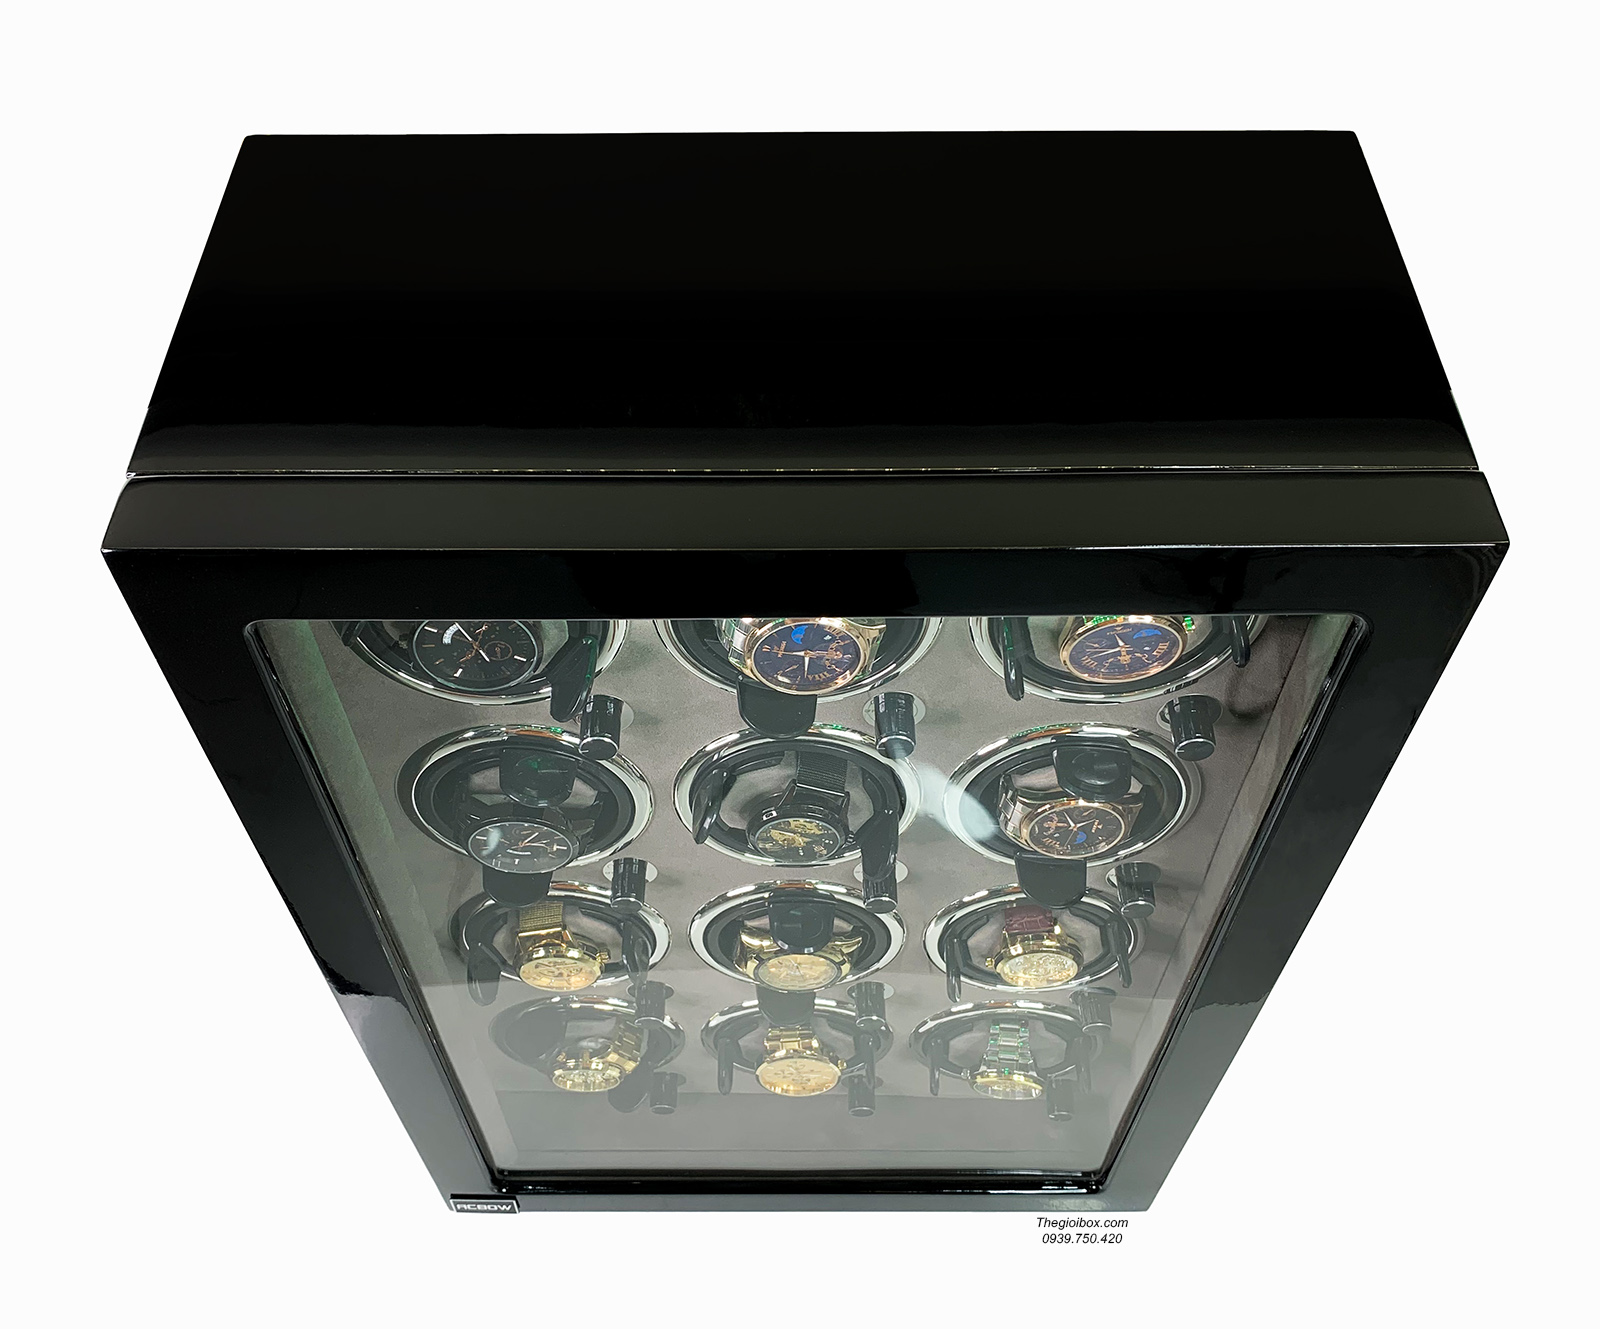 Tủ xoay đồng hồ cơ ACBOW cao cấp - 12 ổ xoay - nội thất nhung xám - vỏ gỗ đen - khóa vân tay - đèn led giá rẻ